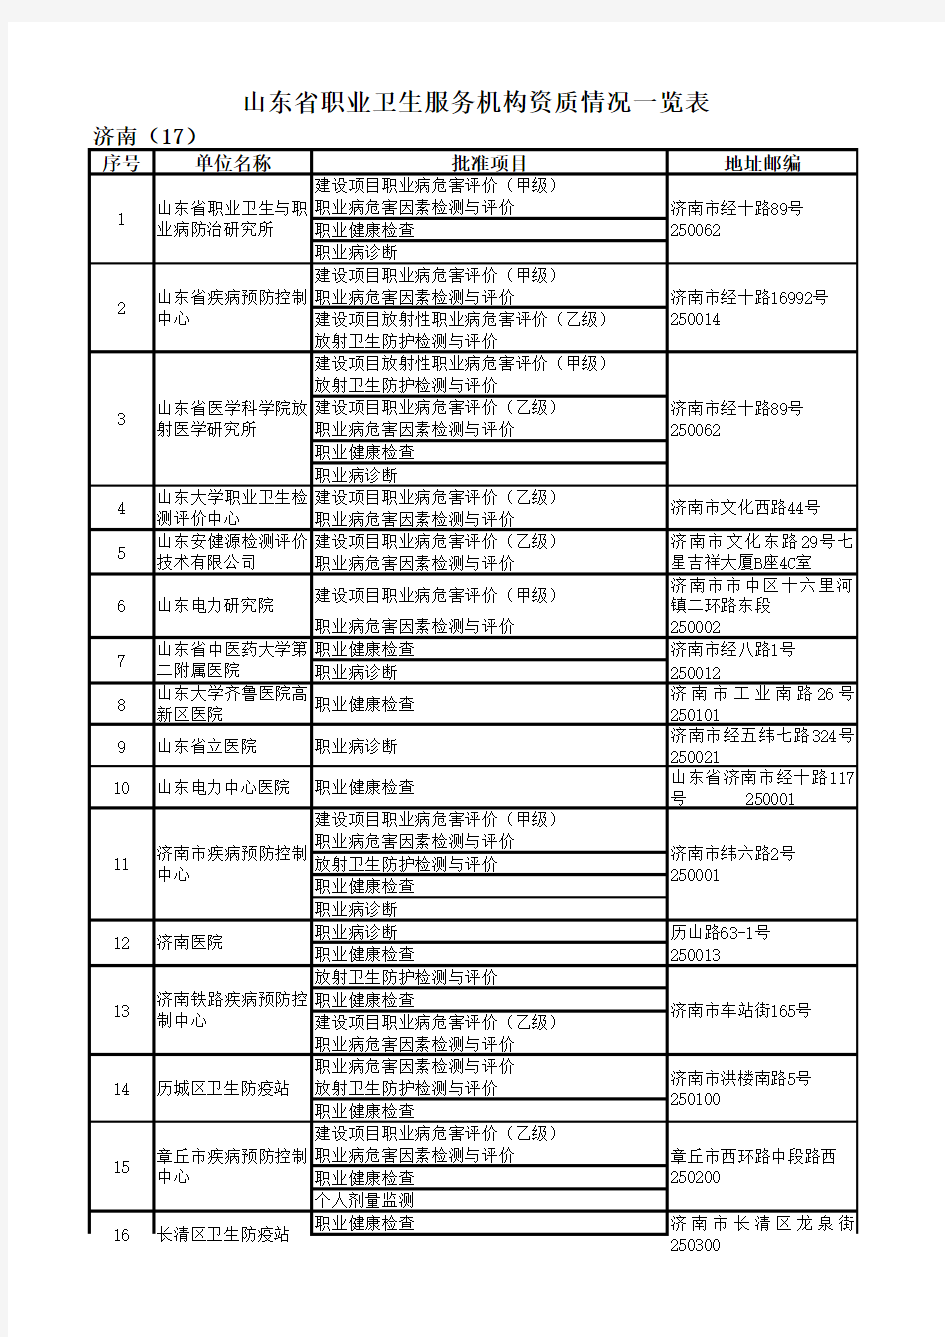 山东省职业健康体检机构名单